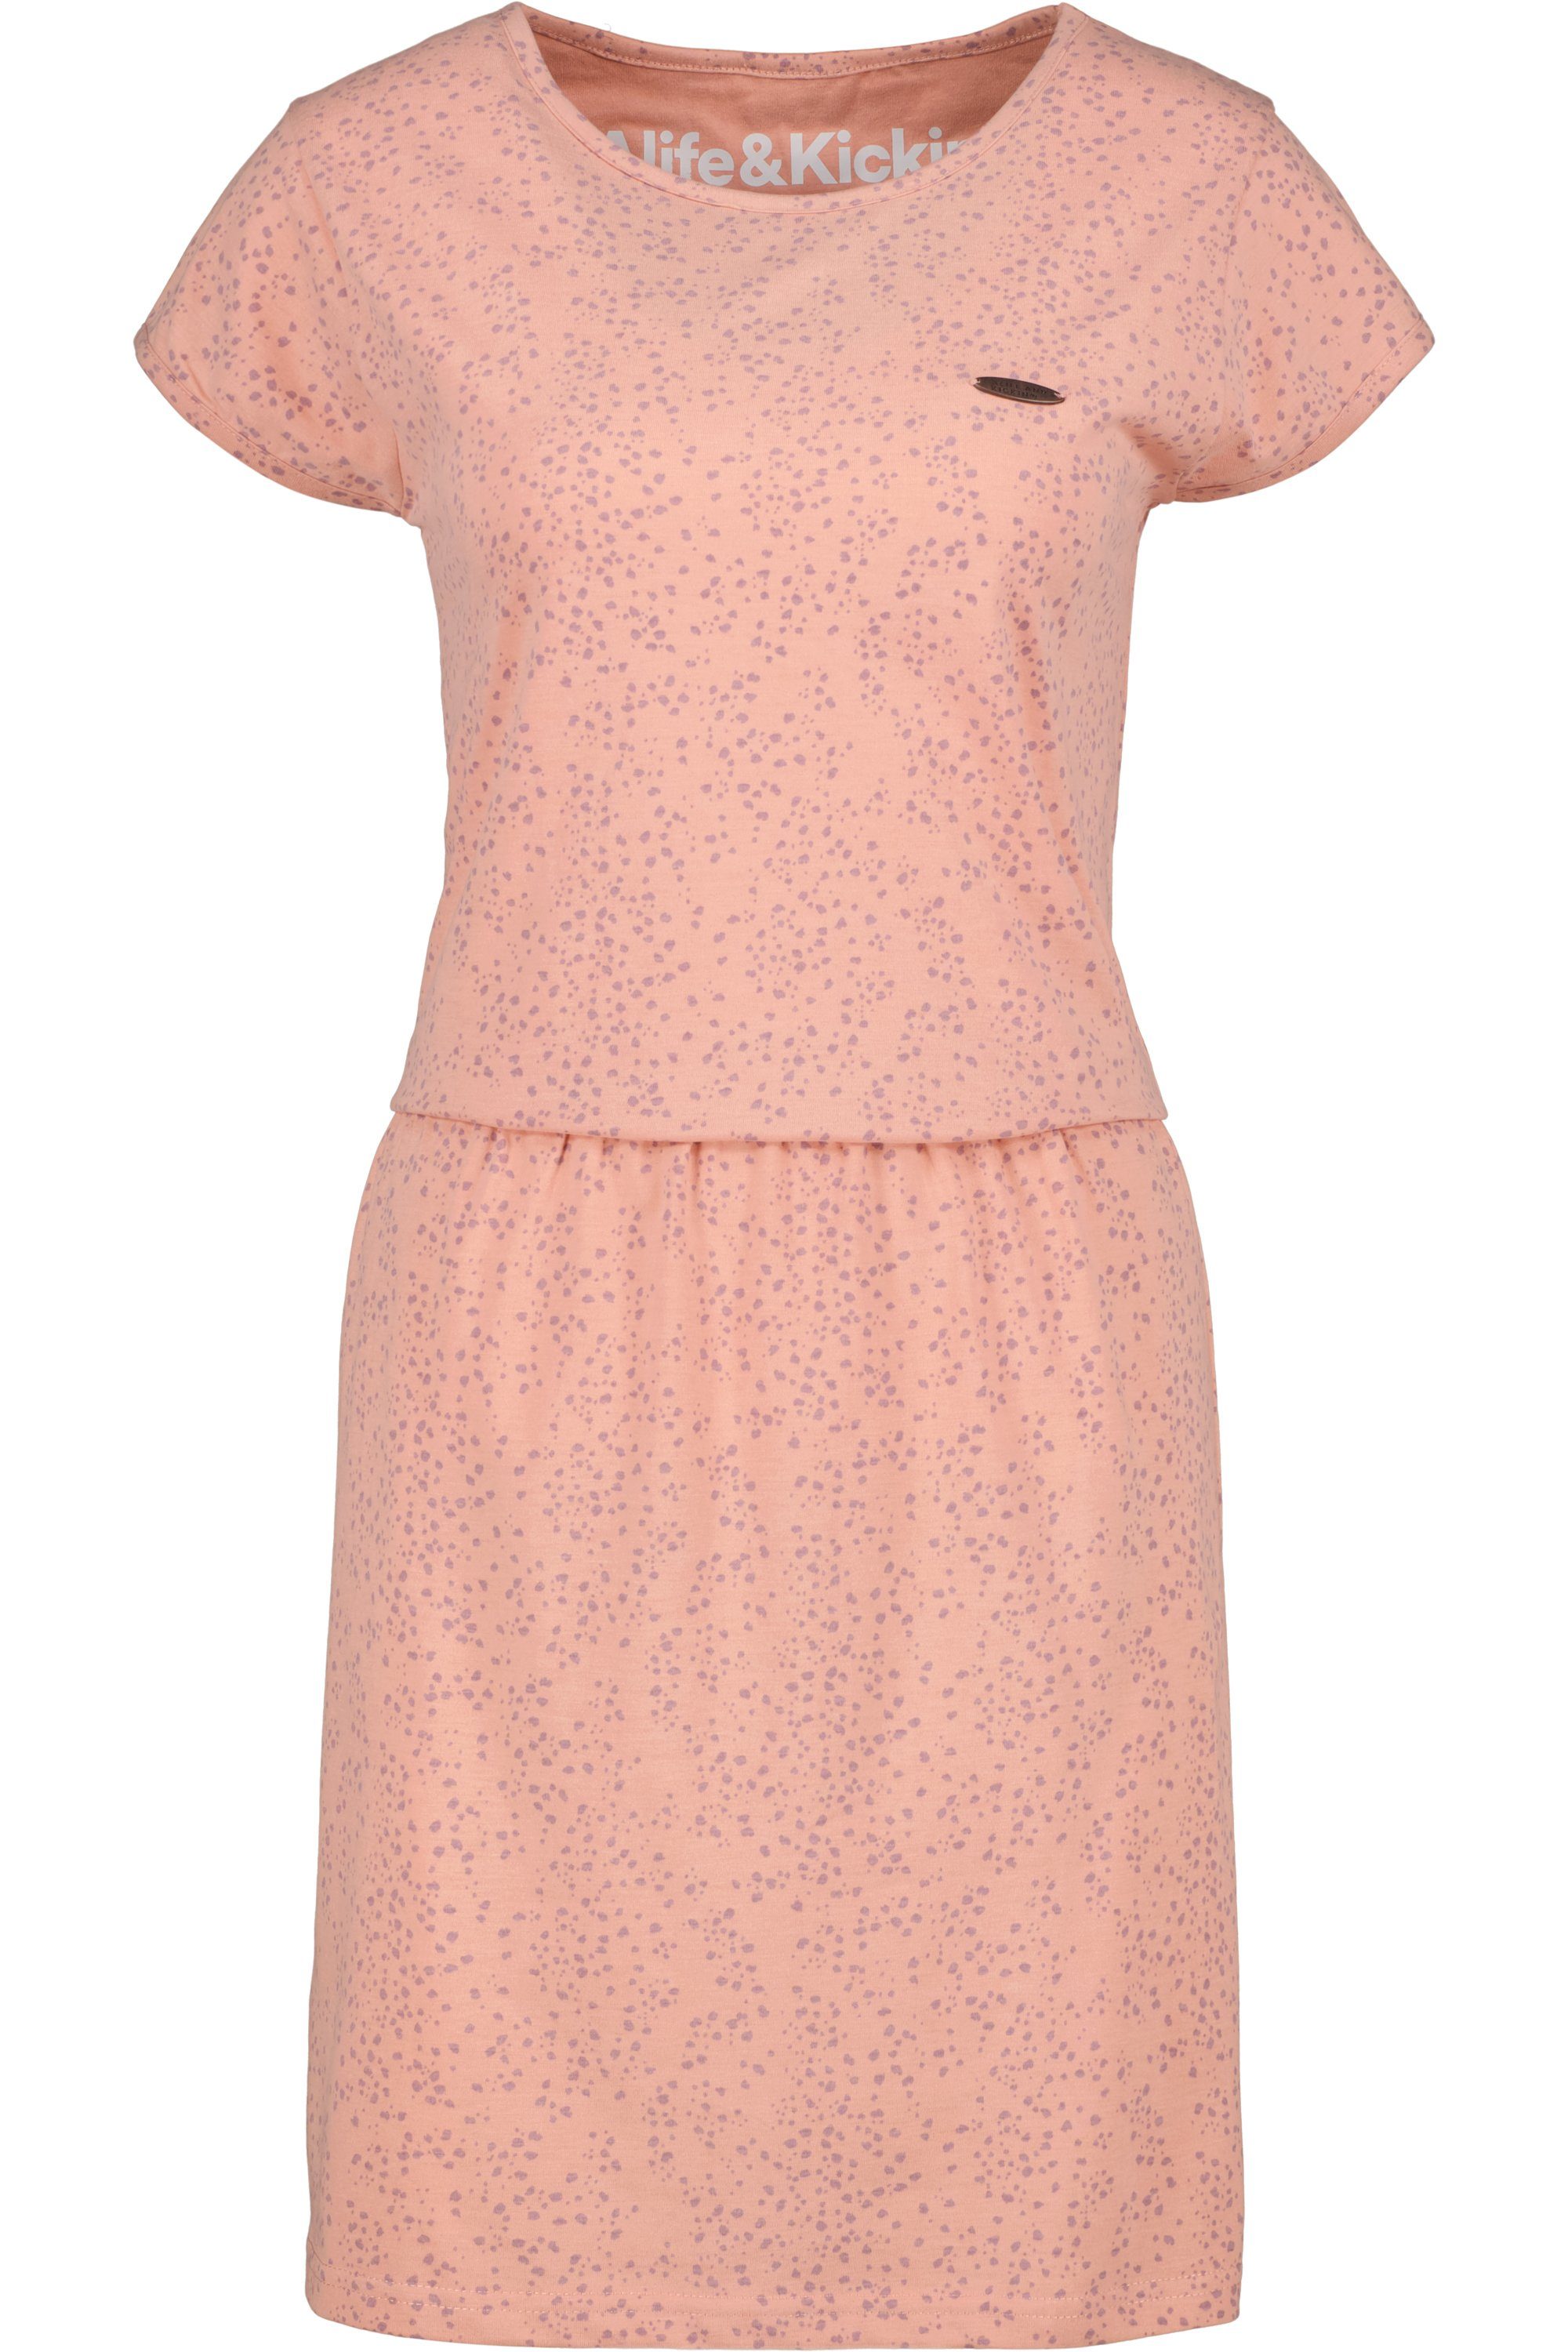 Alife & Kickin Blusenkleid mahagonium Sommerkleid, ShannaAK melange Damen B Kleid Shirt Dress